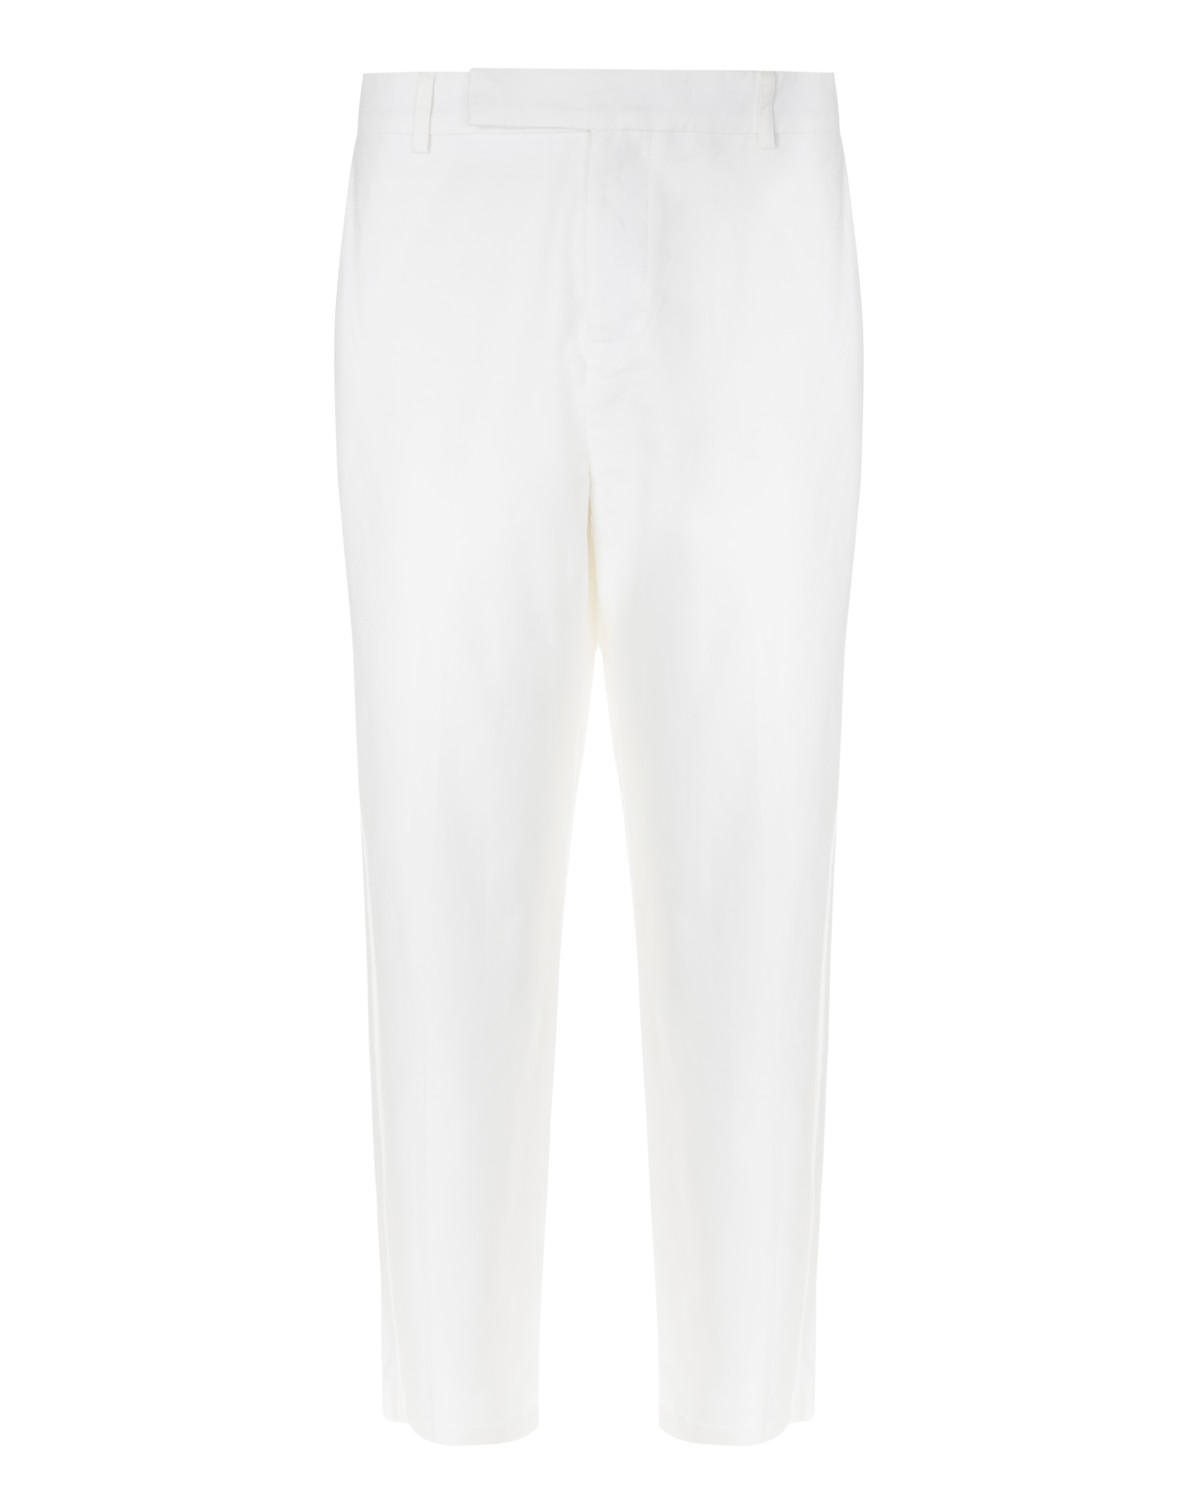 calça reta de alfaiataria em algodão | tailoring cotton pants